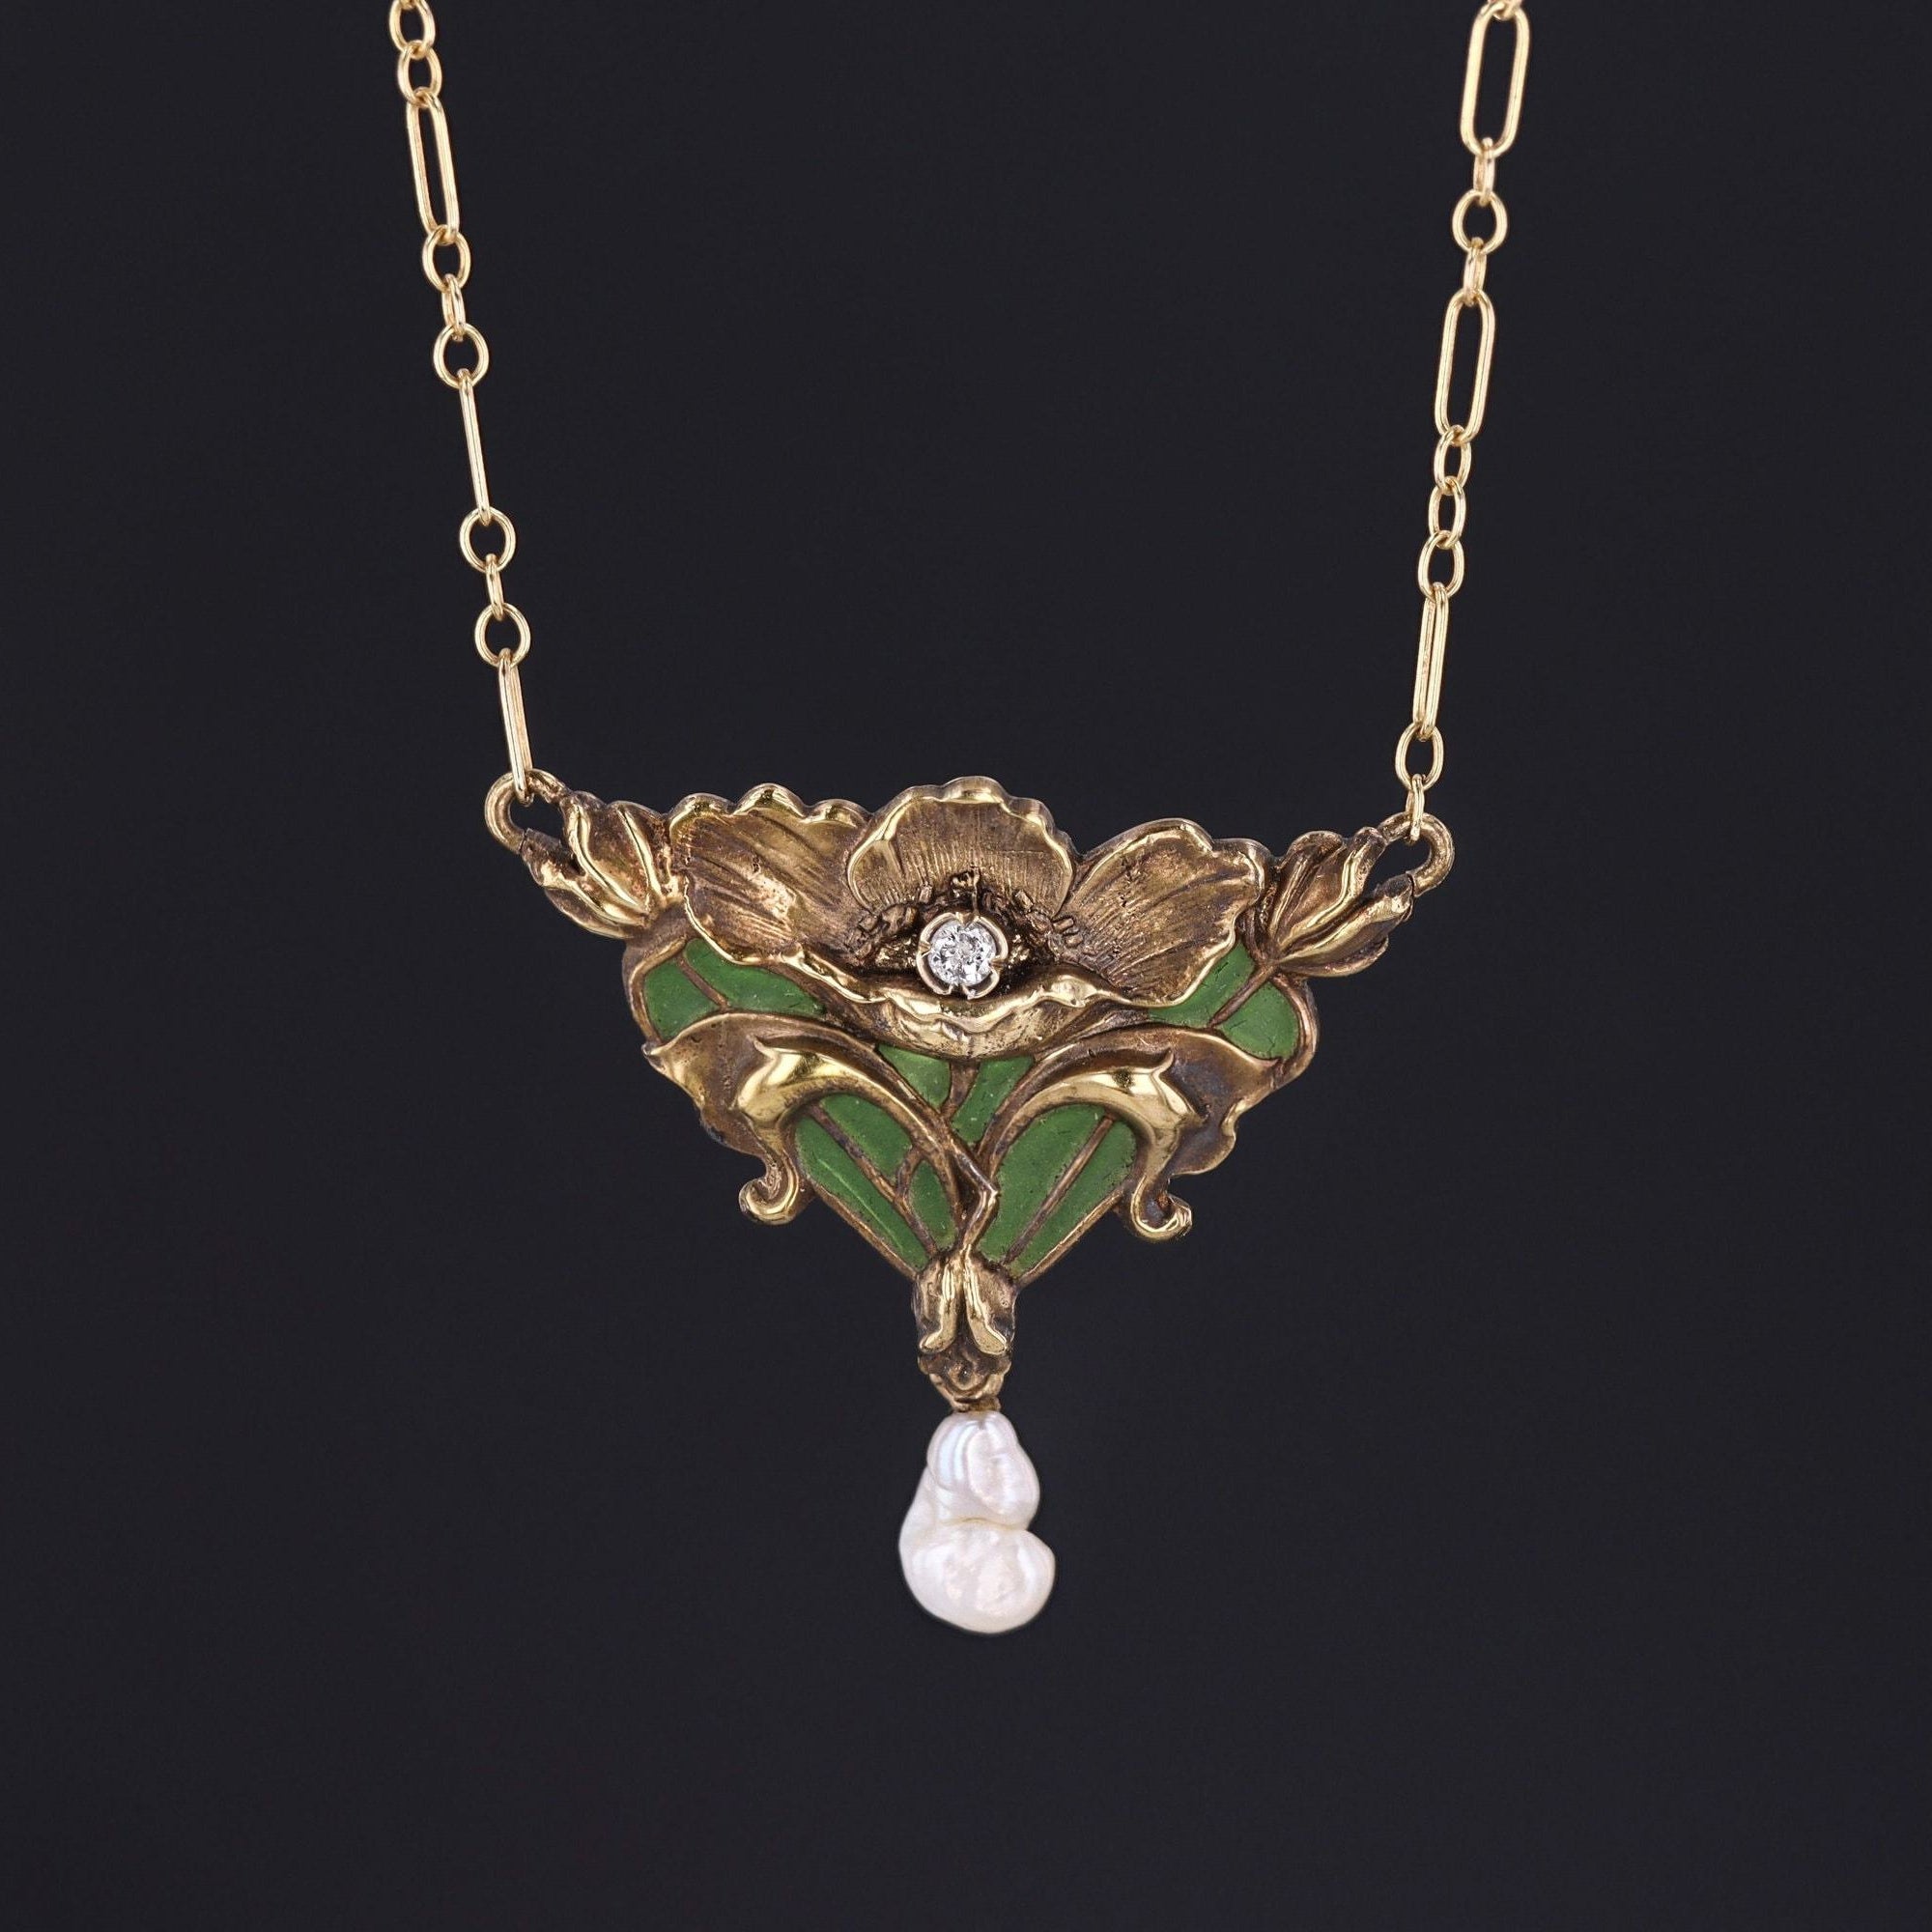 Plique-a-Jour Enamel Flower Necklace | Antique 14k Gold Necklace 